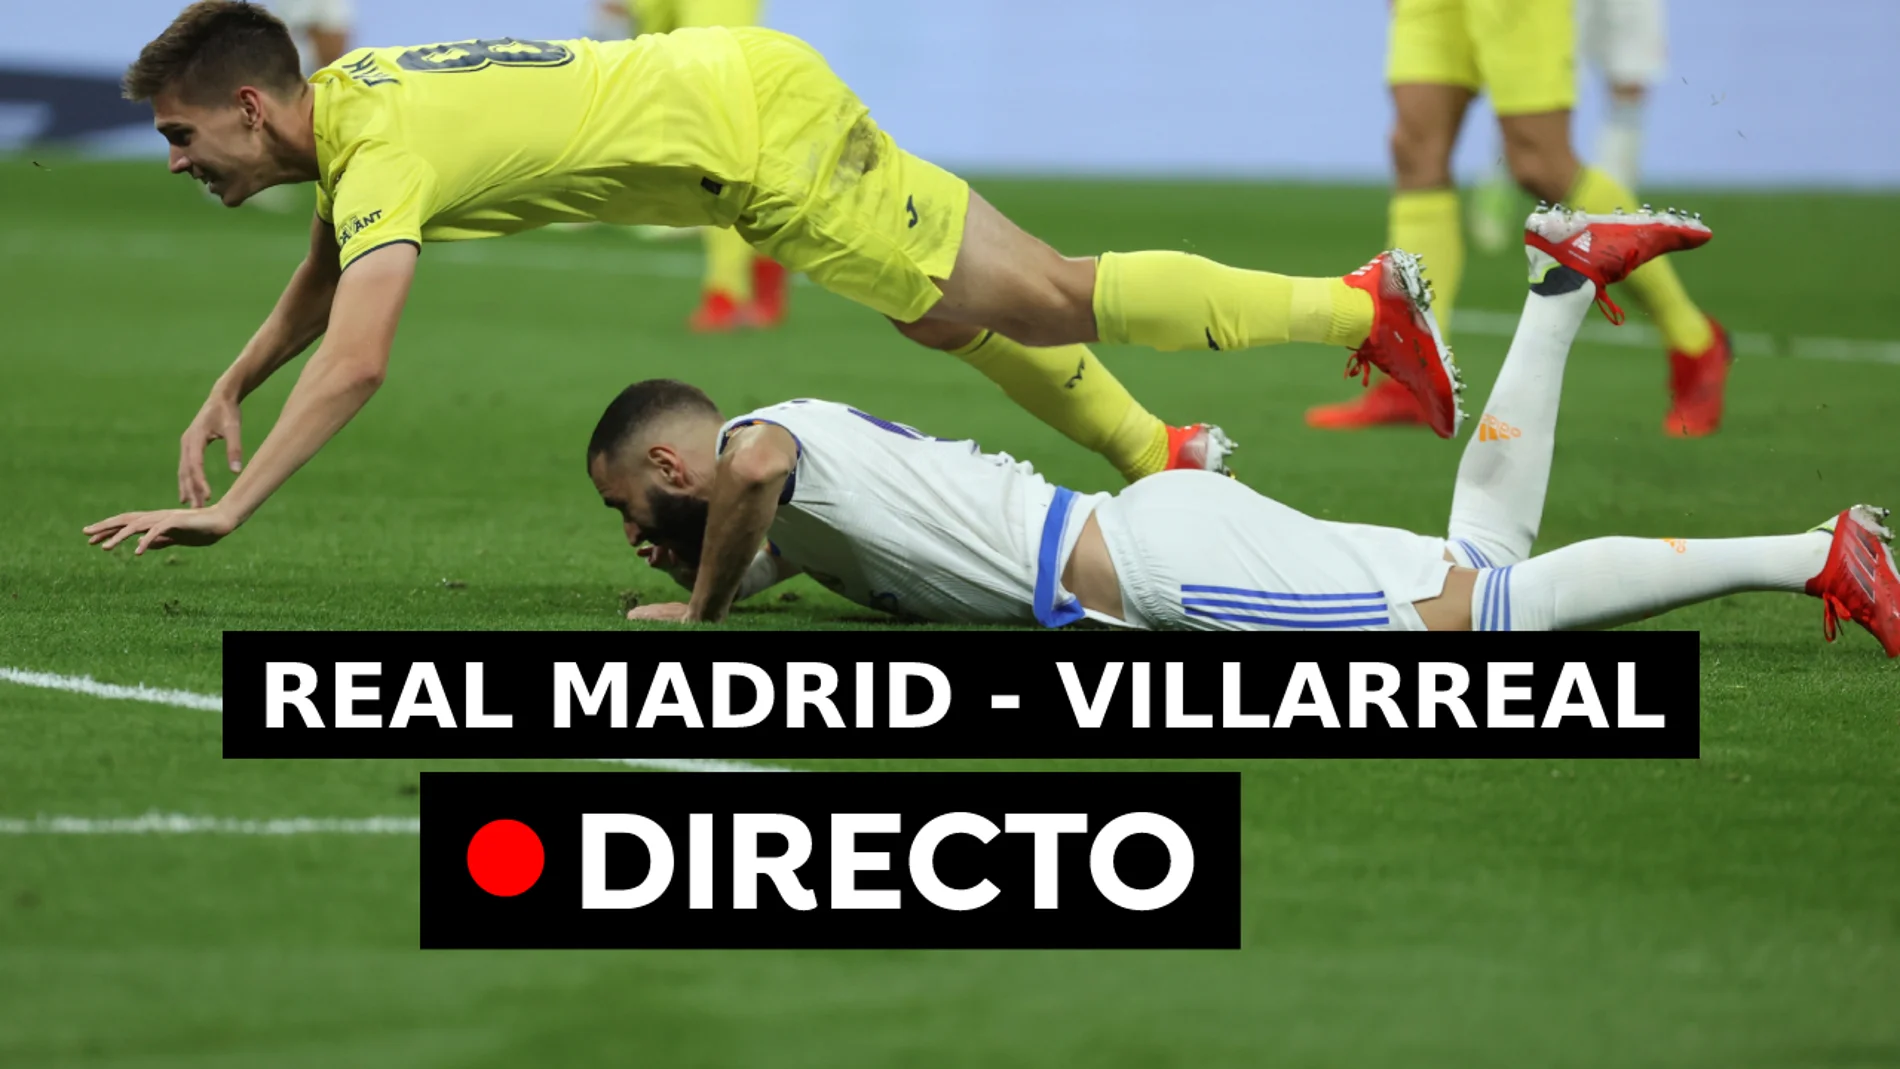 Real Madrid - Villarreal: Resultado y goles de LaLiga hoy, en directo (0-0)